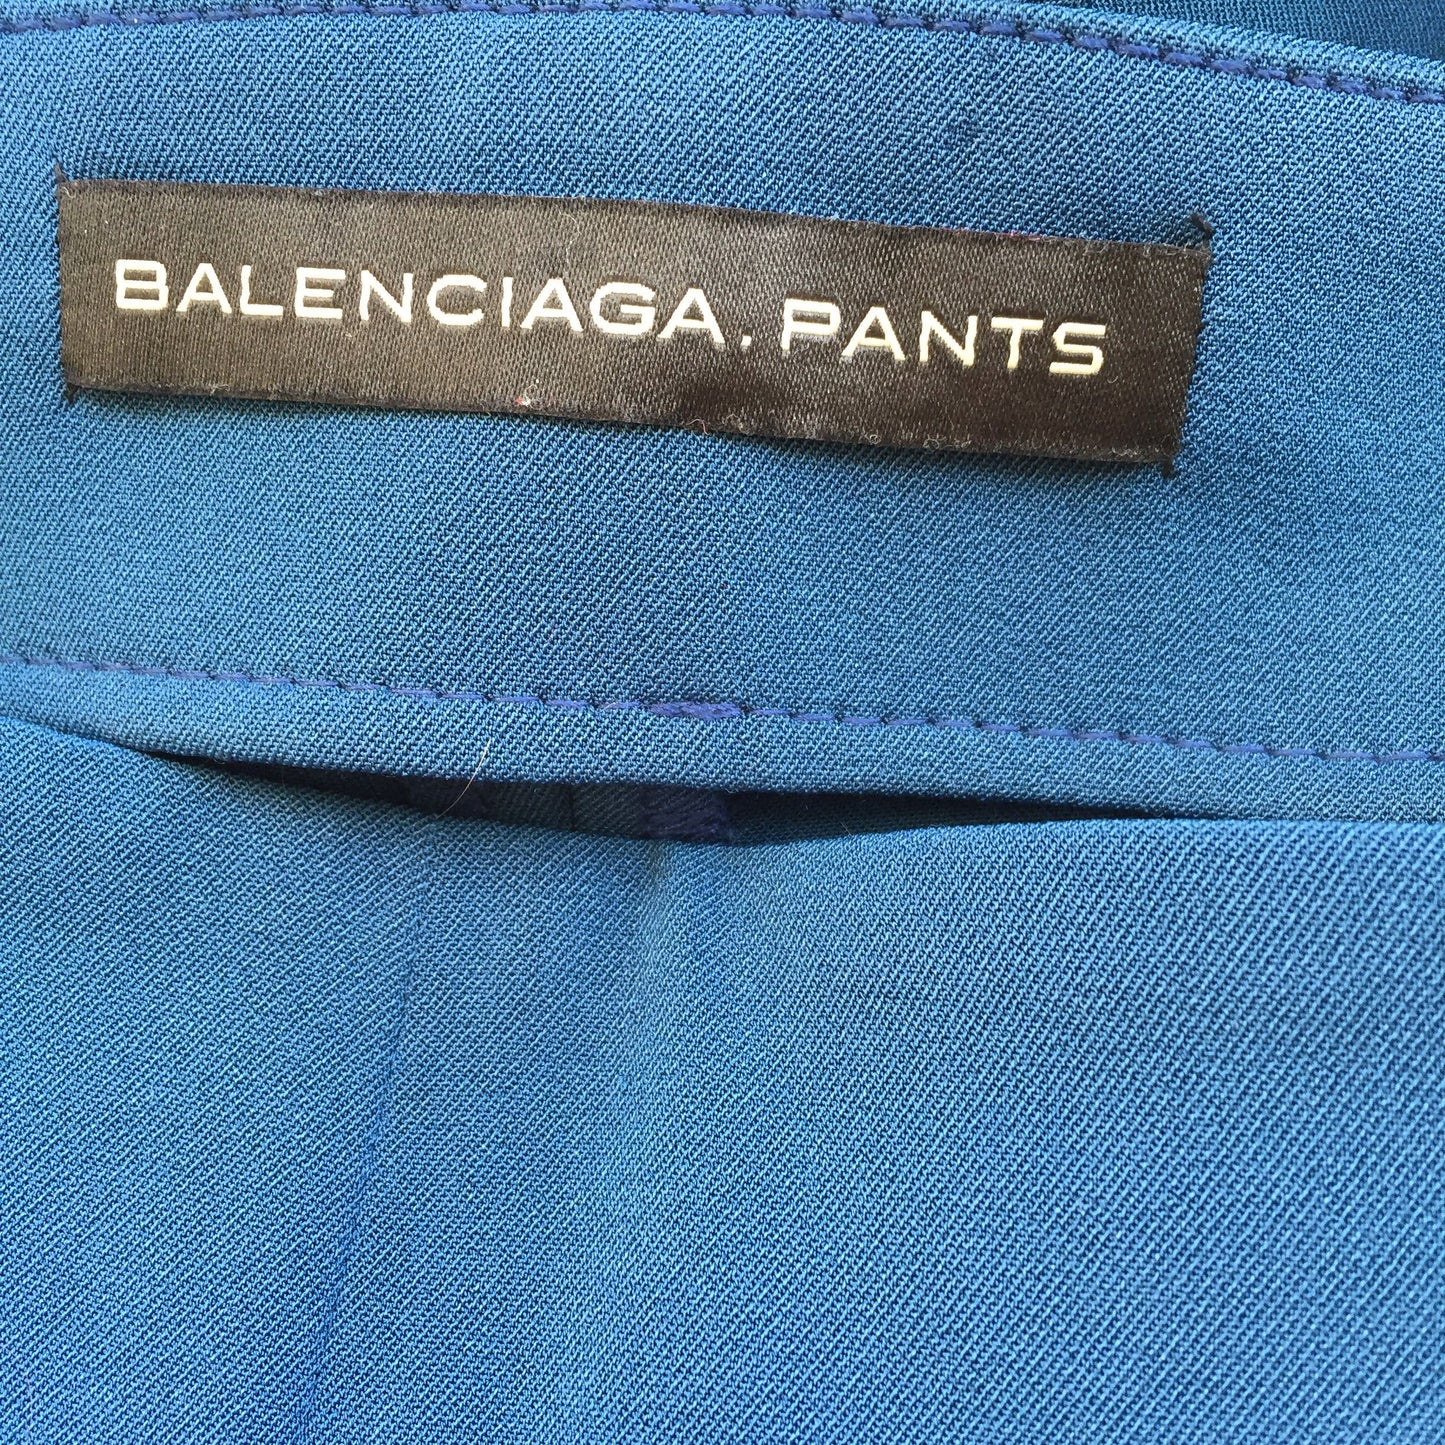 Pantalon Balenciaga Bleu T.34